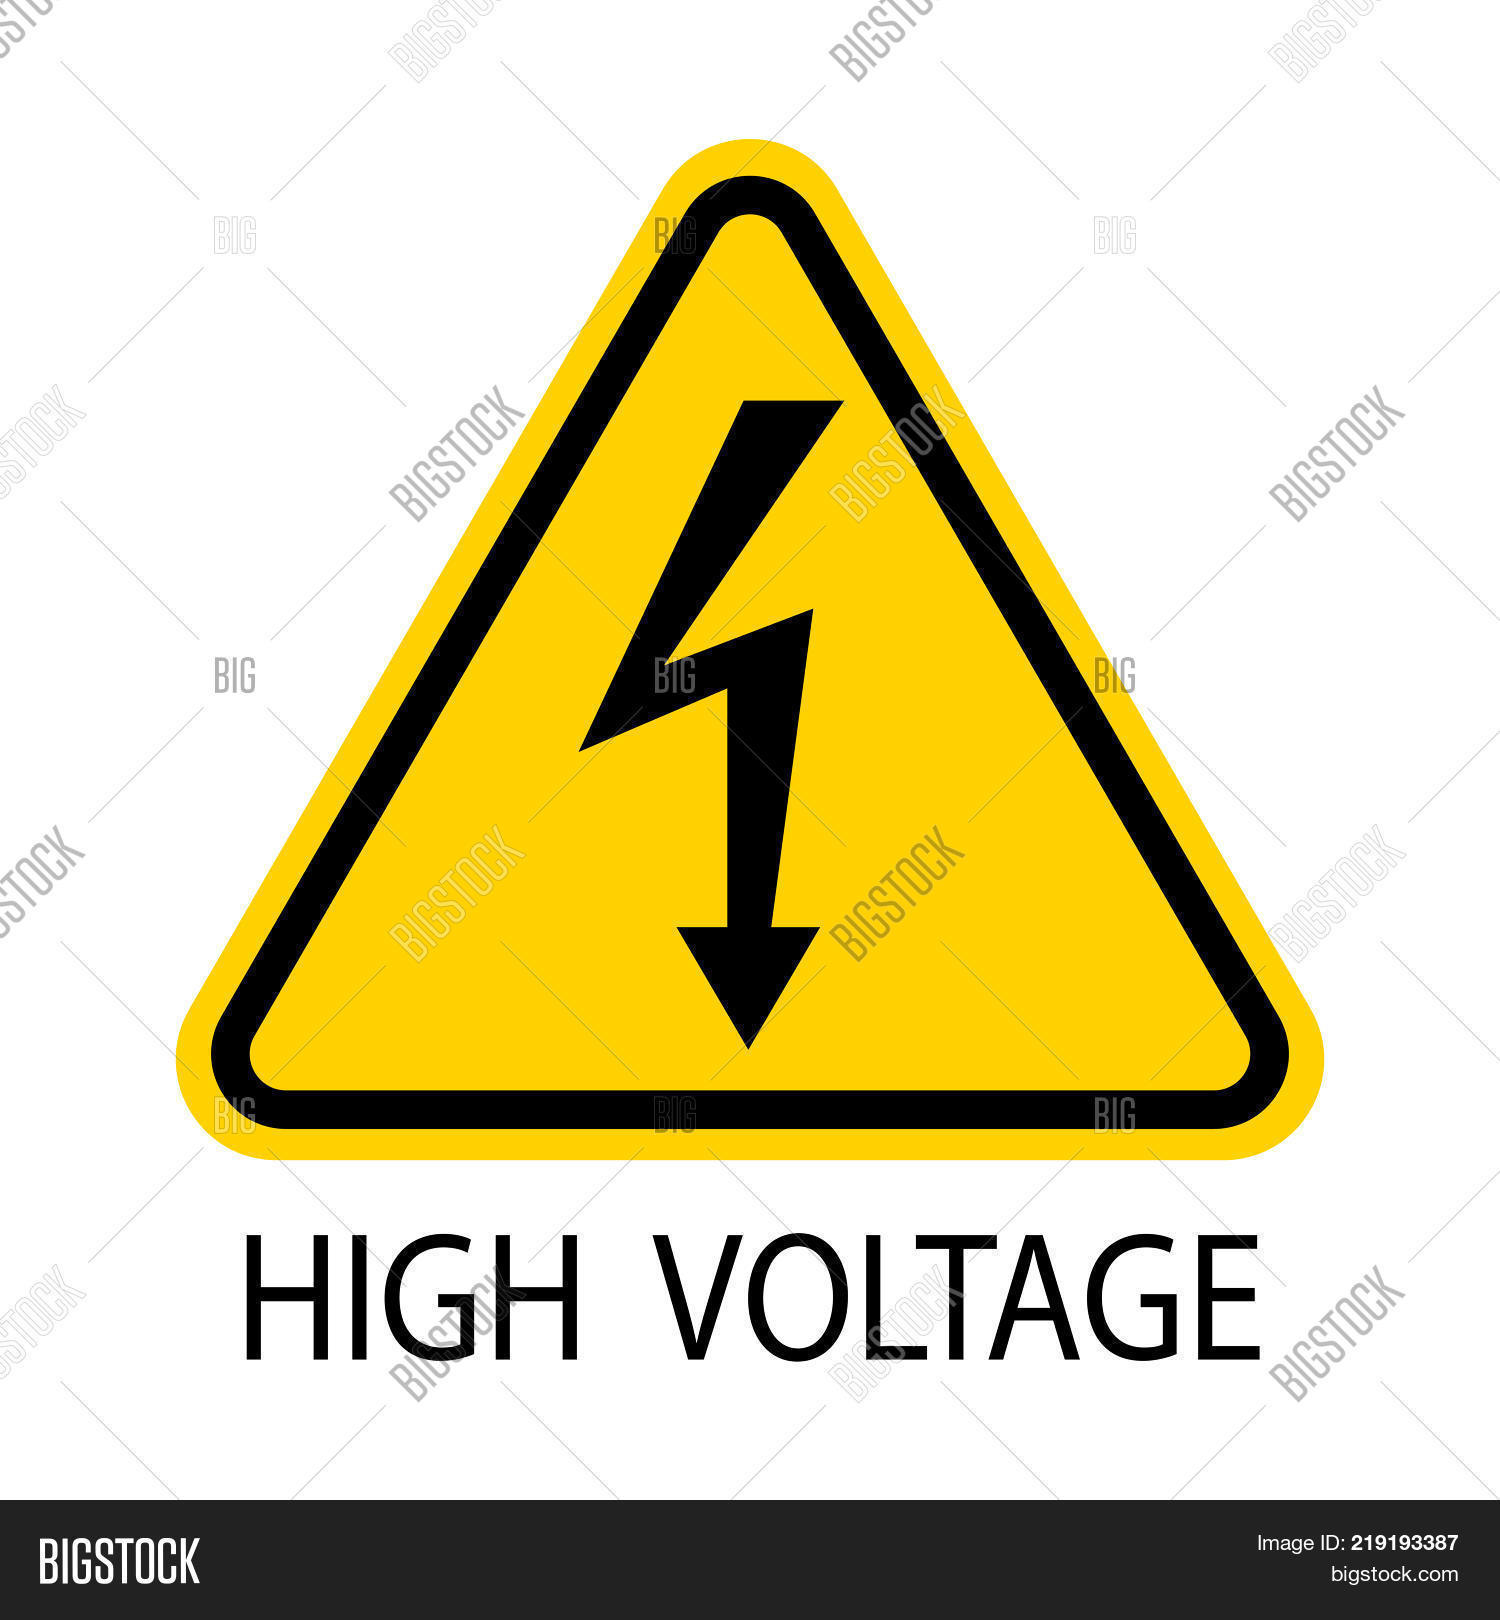 High Voltage Sign. Danger Symbol. Image & Photo | Bigstock